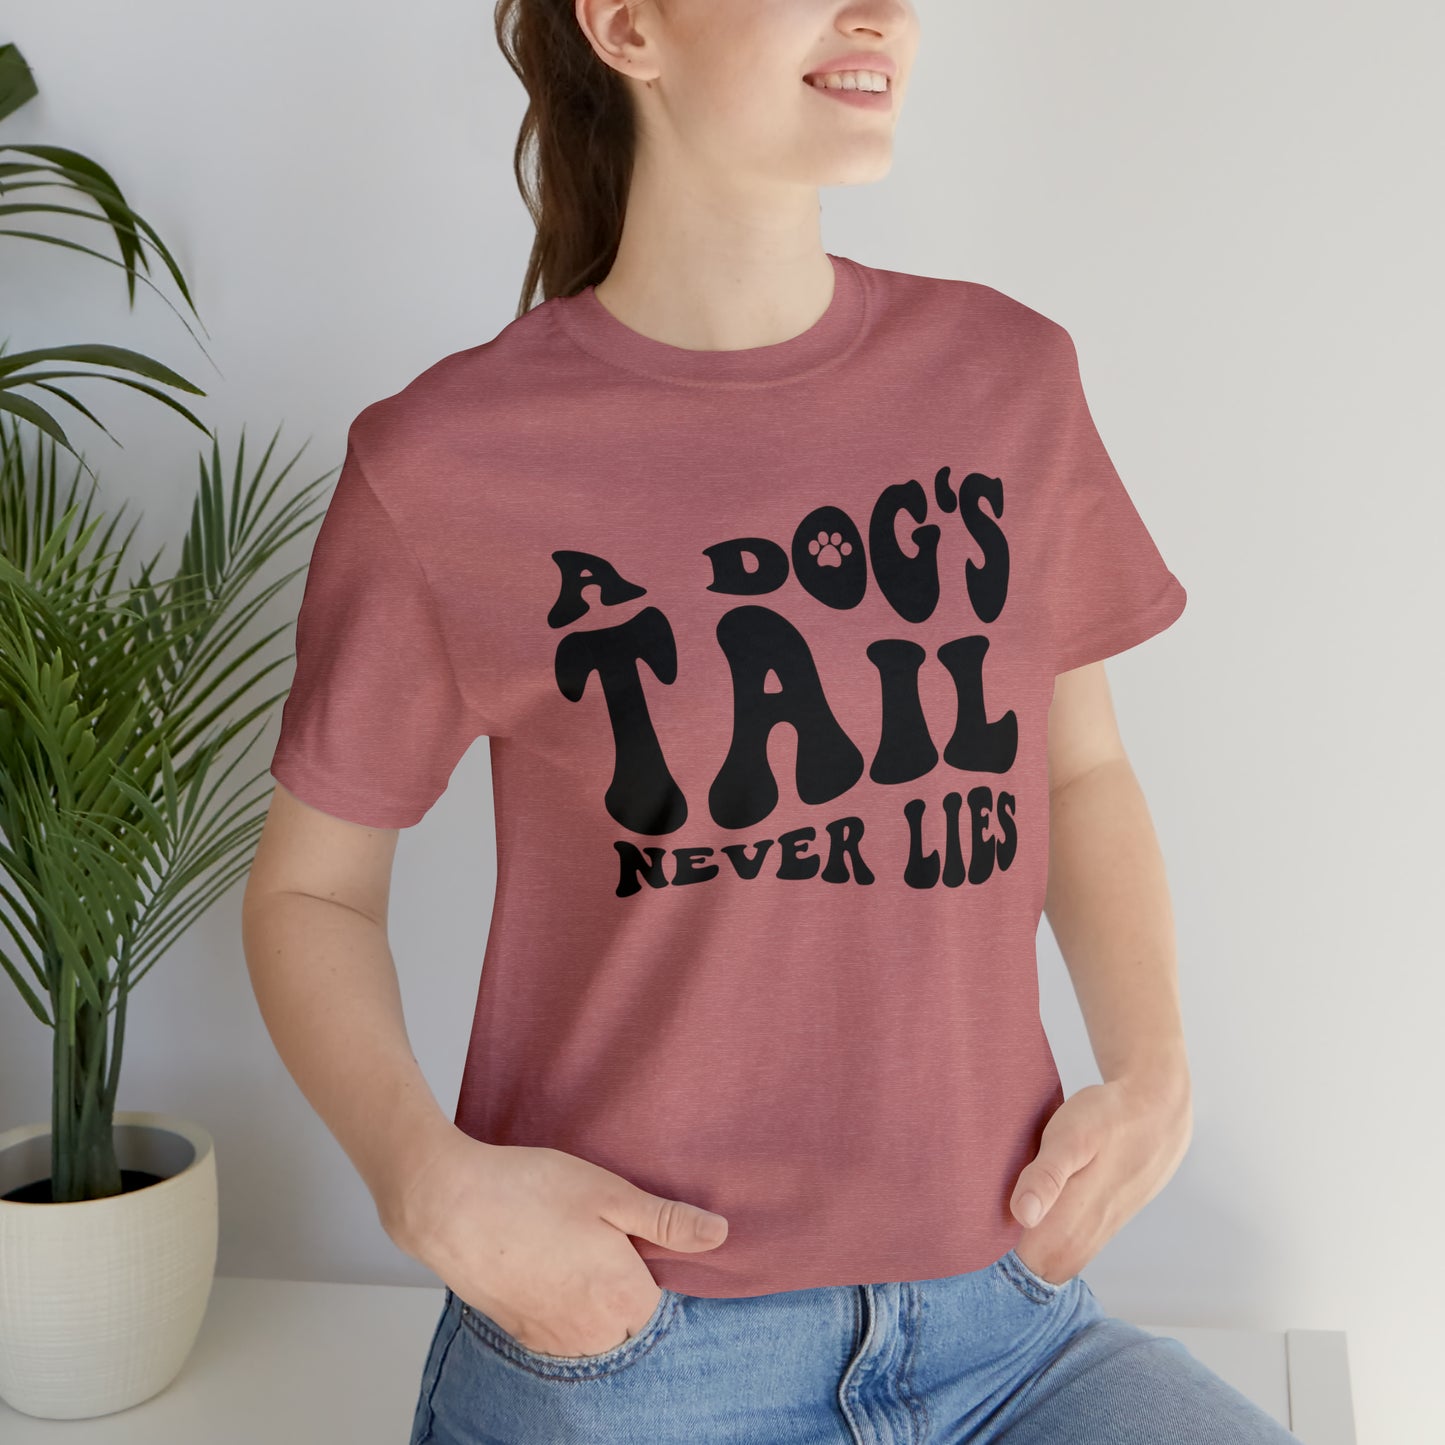 A Dog's Tail Never Lies Short Sleeve T-shirt